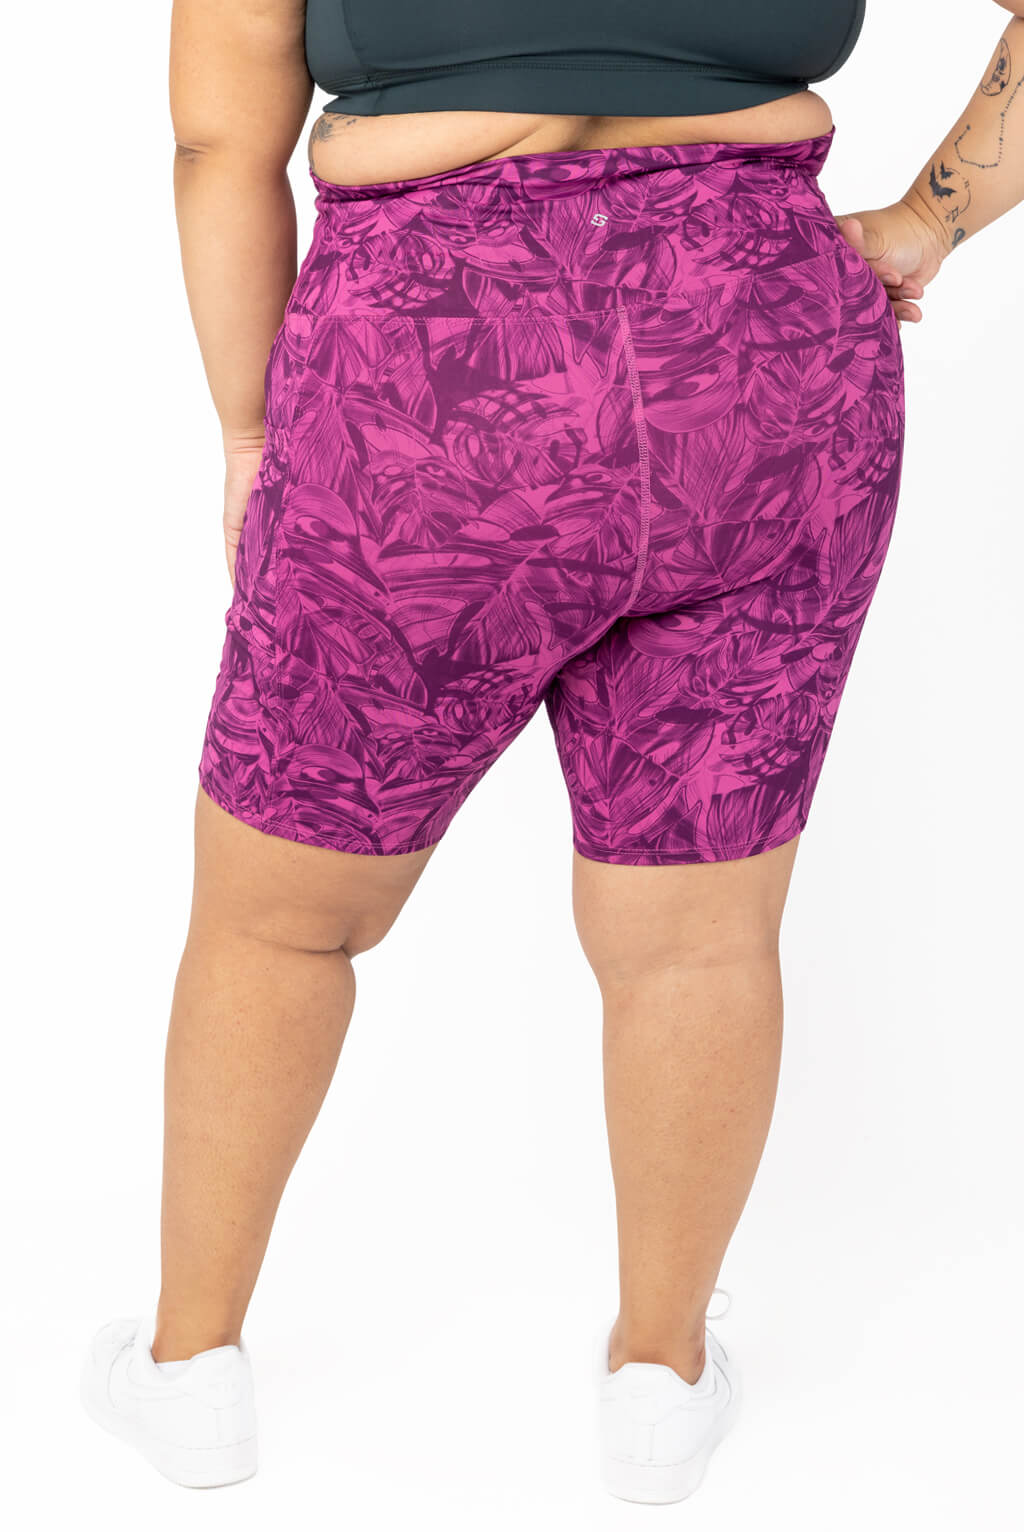 superfit pocket bike shorts in colorful prints, back